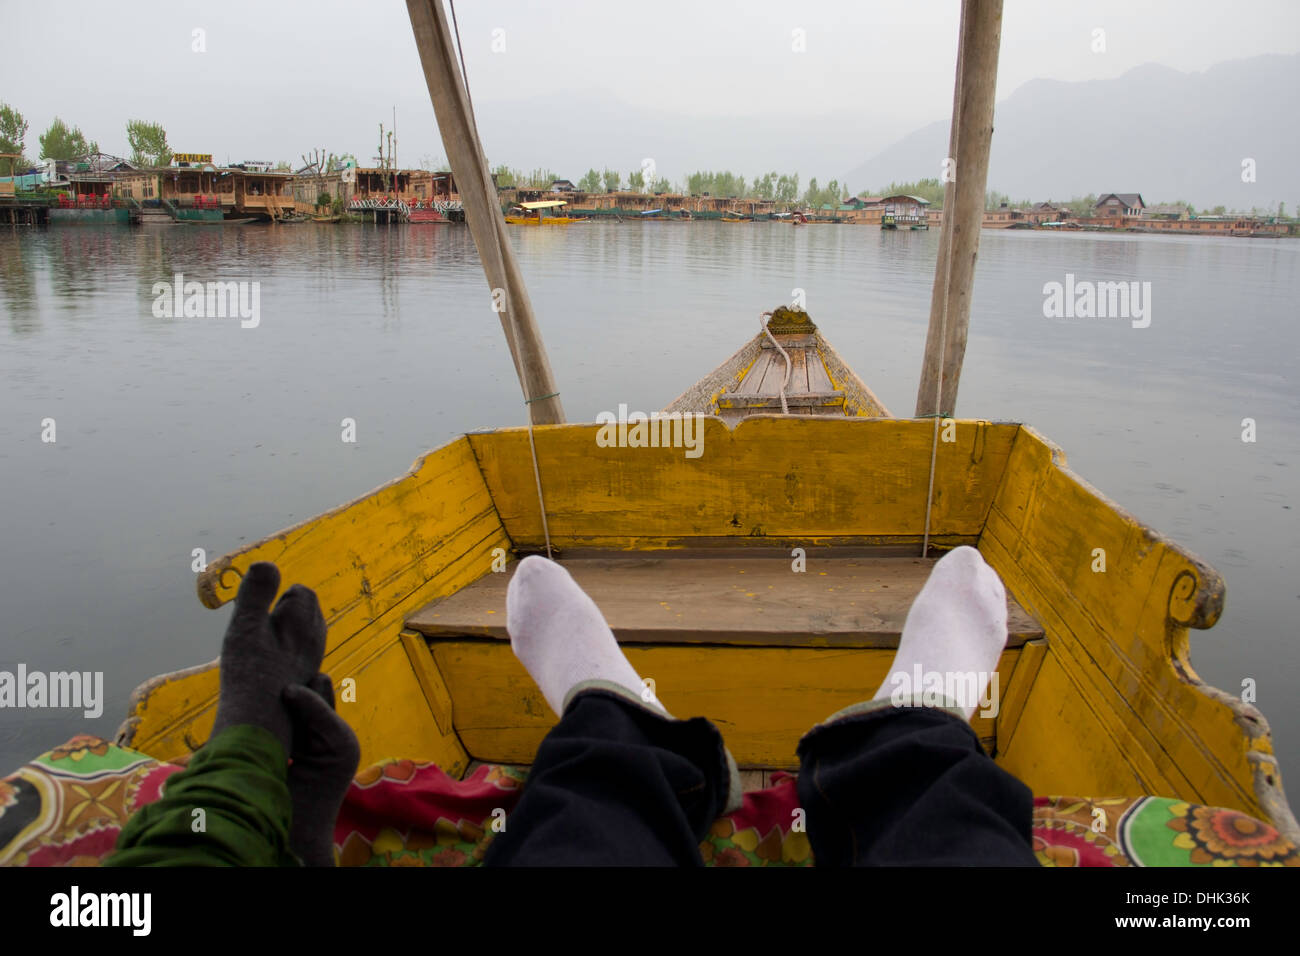 Les jambes dans une shikara et une vue de péniches dans le lac Dal à Srinagar au Cachemire en Inde. Montagnes, péniches et lac. Banque D'Images